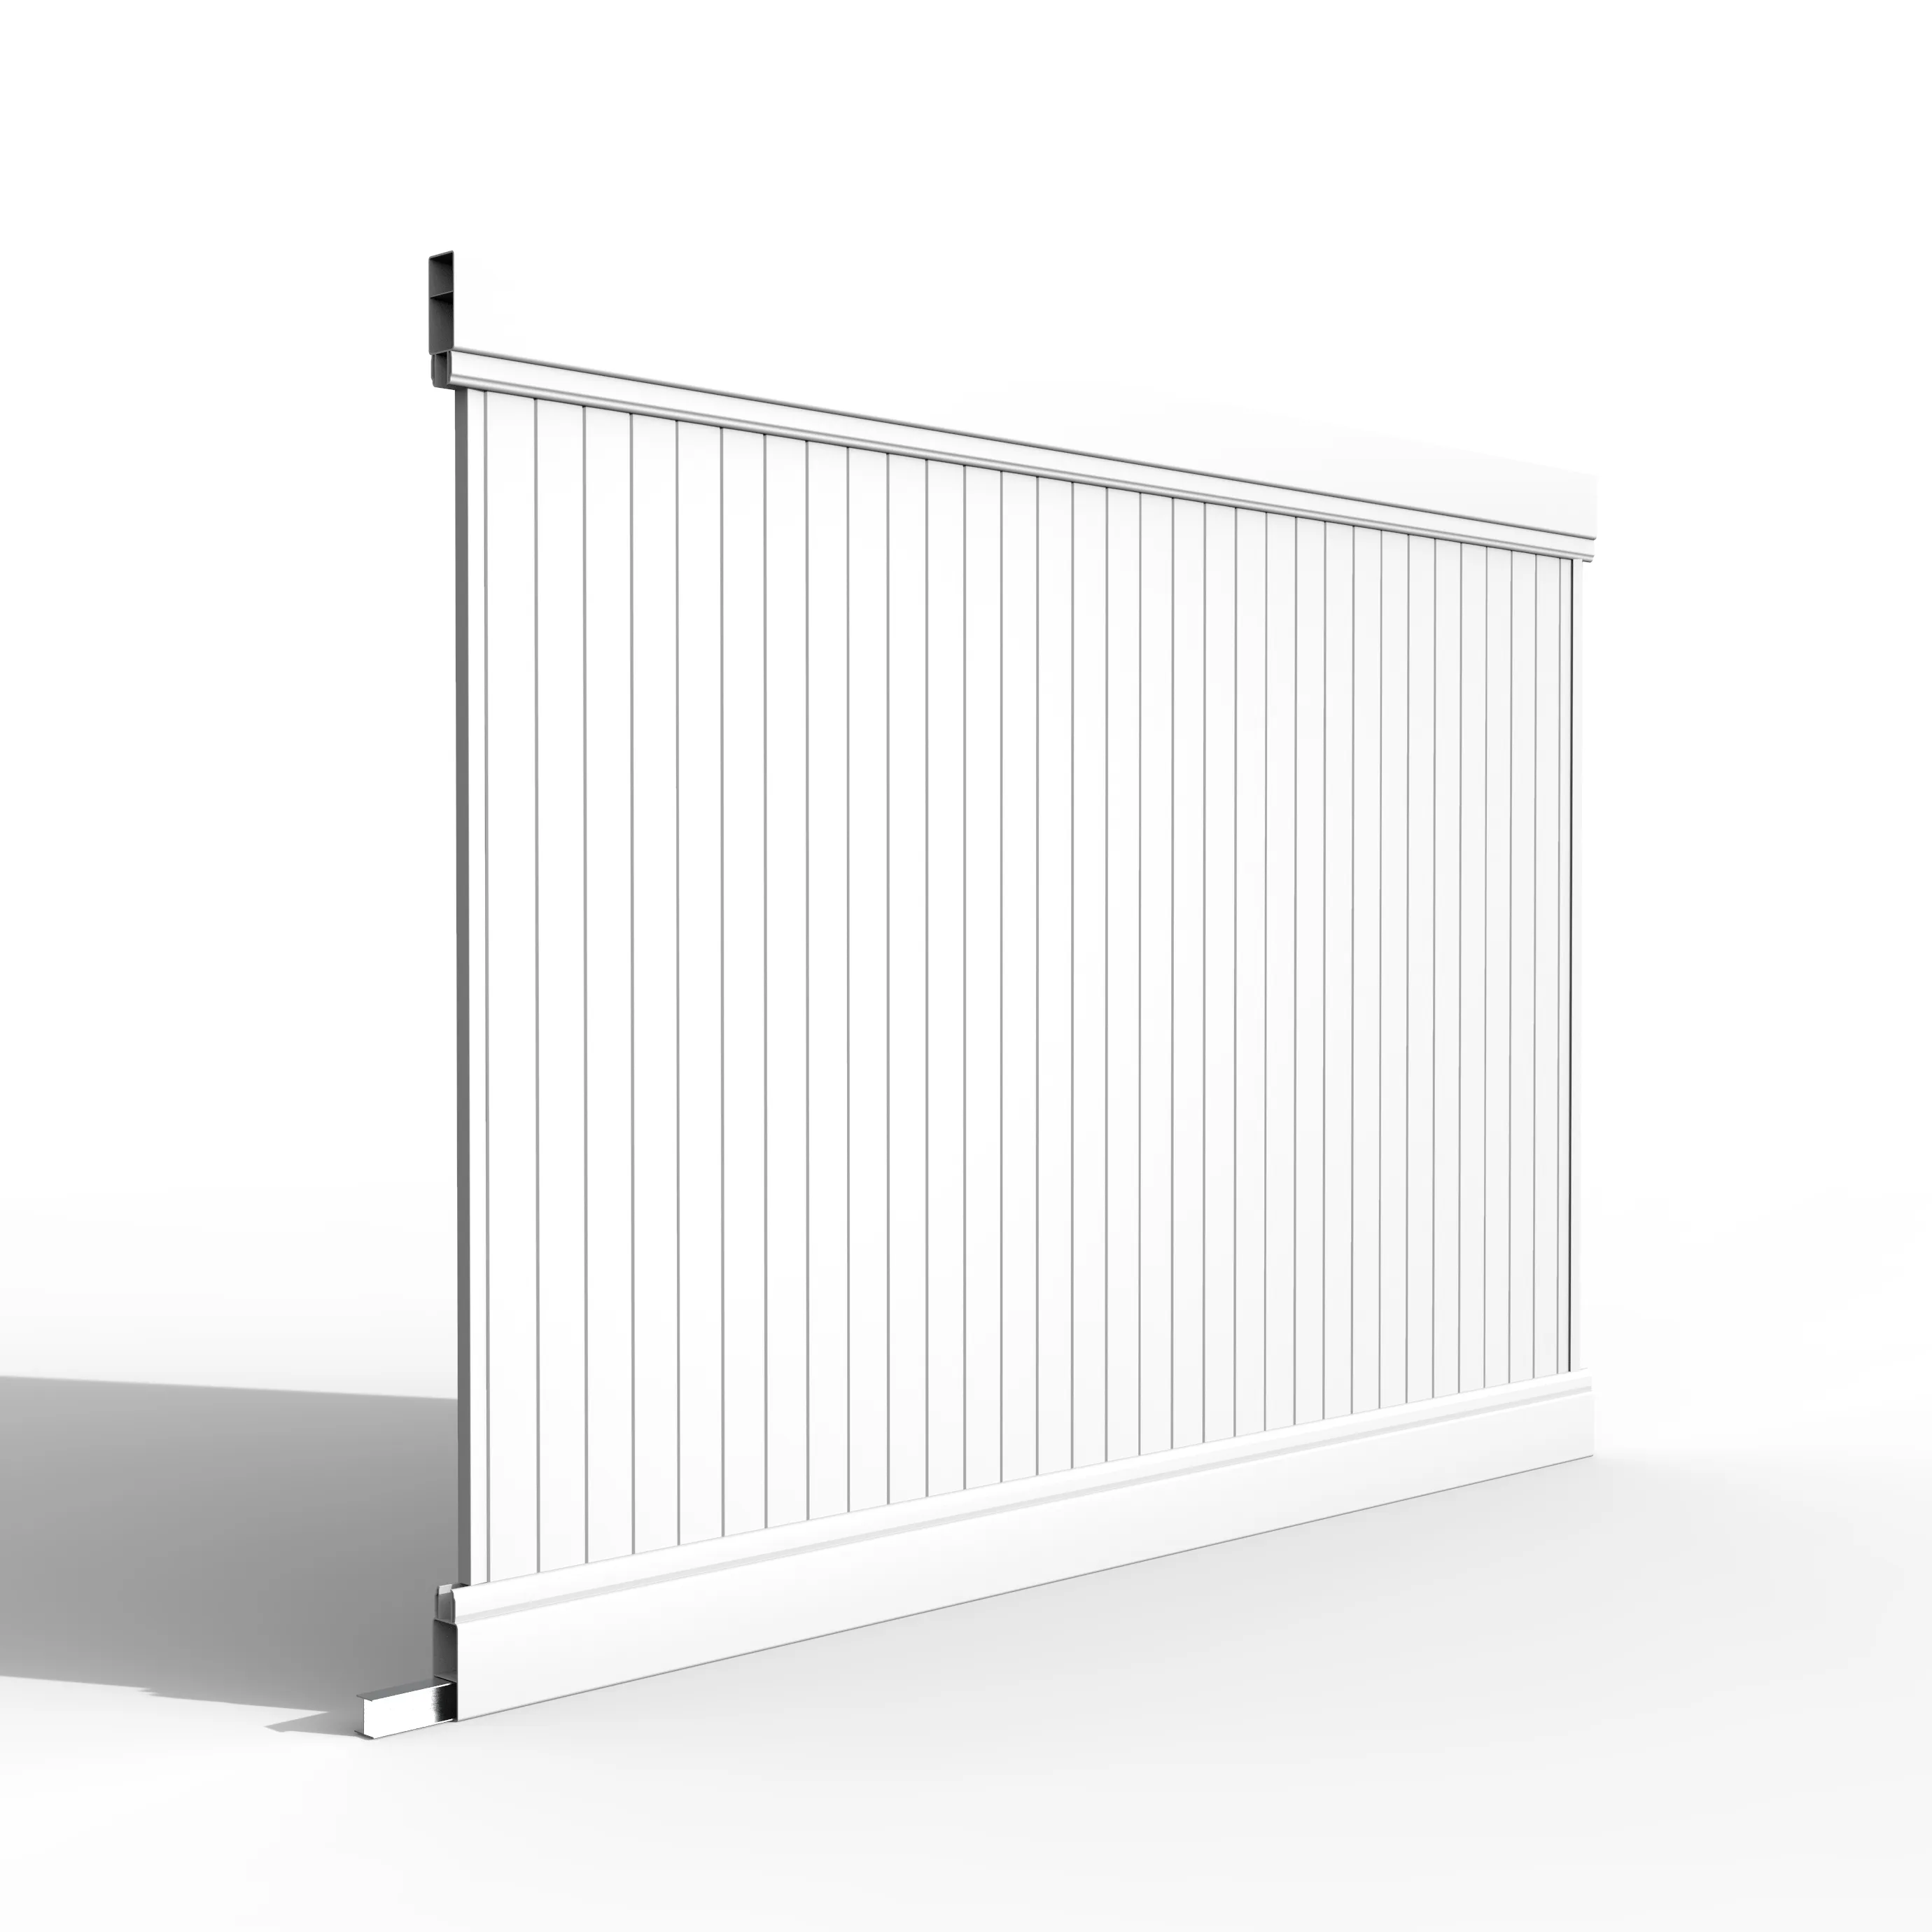 UV geçirmez kullanılan ucuz çit panelleri H6ft x W8ft plastik PVC vinil gizlilik çit